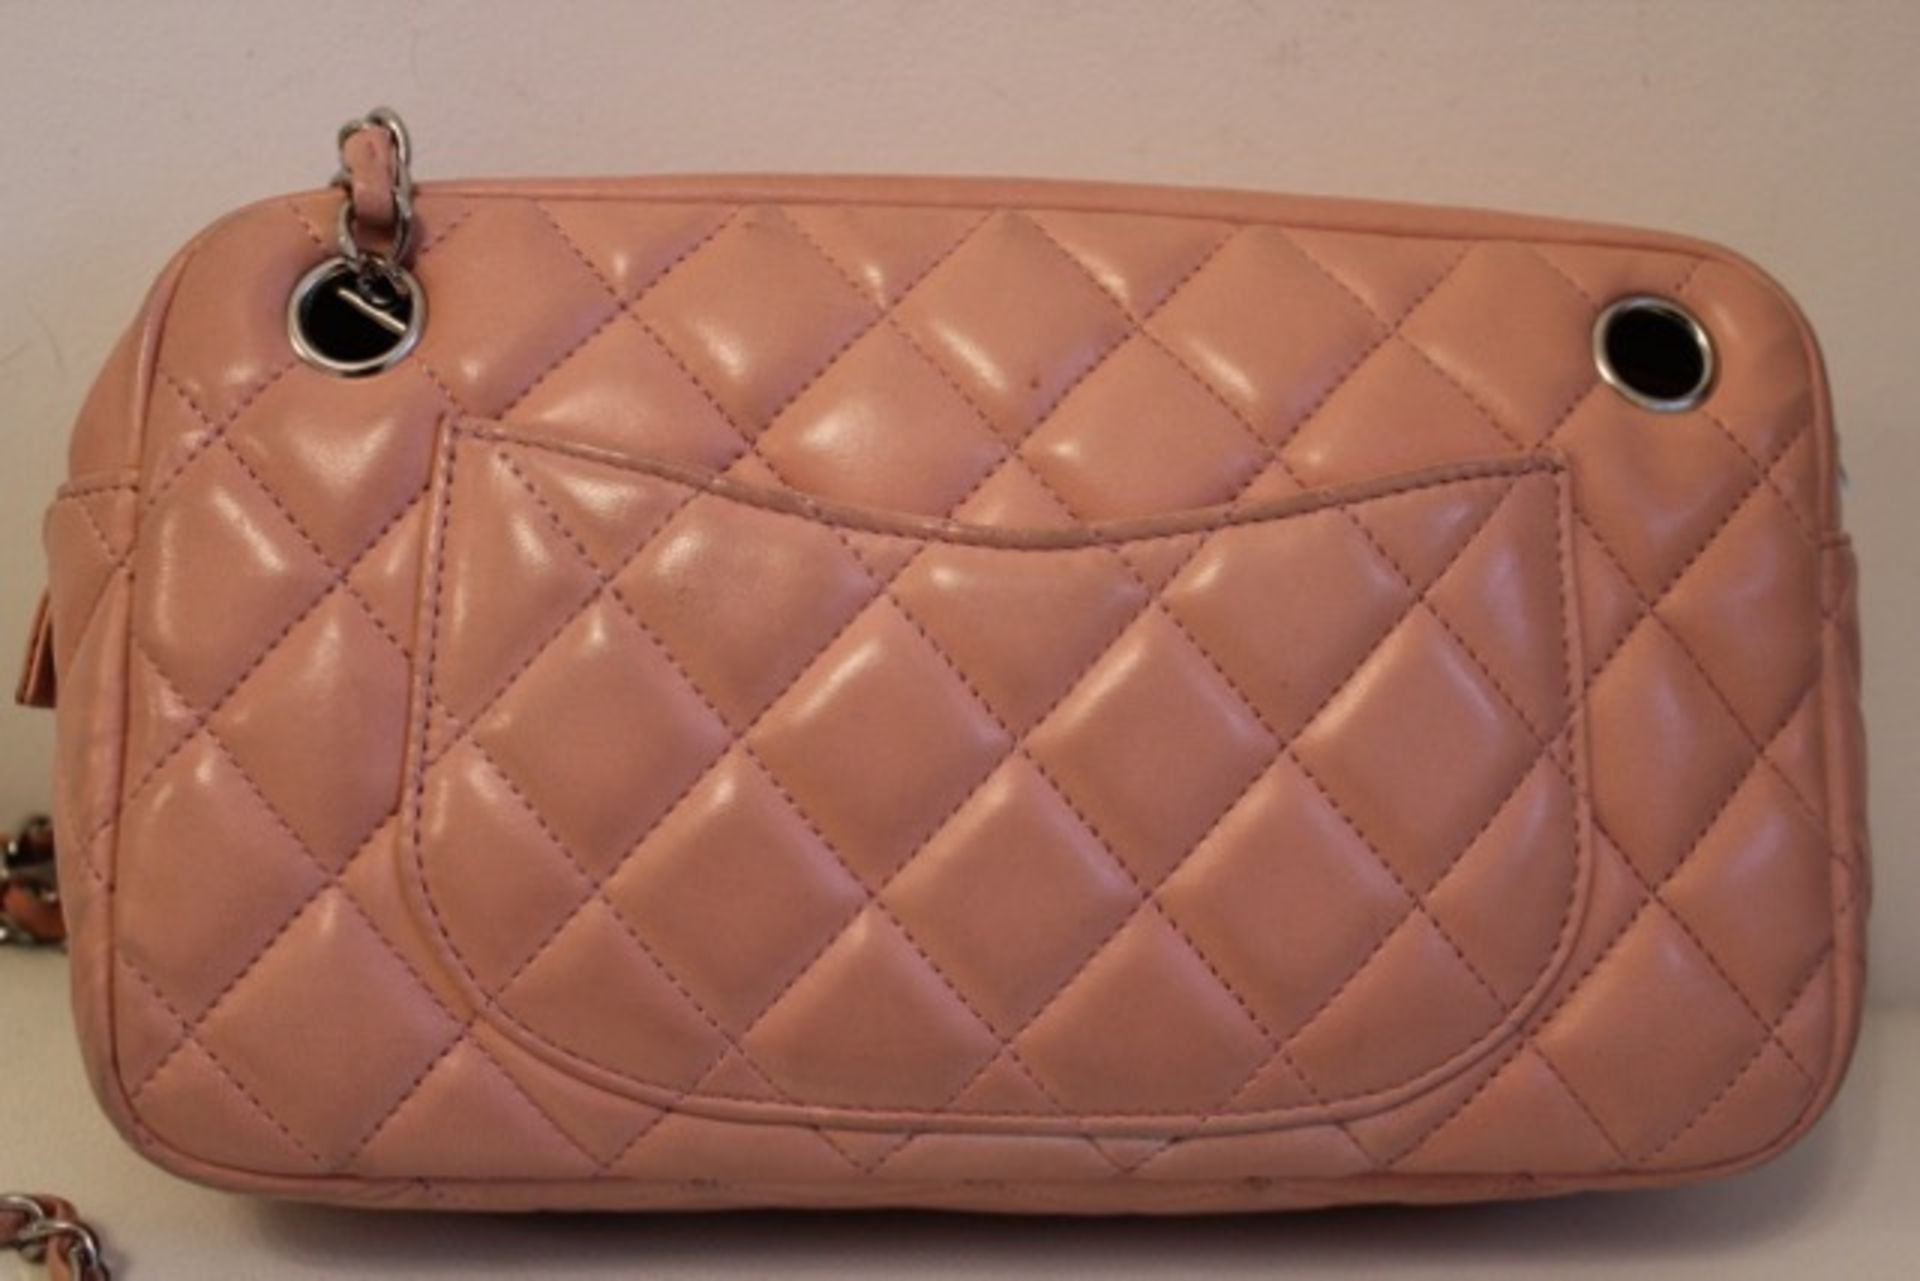 CHANEL Shoulder Bag - Pale Pink Lambskin Leather Silver Hardware - Image 12 of 22